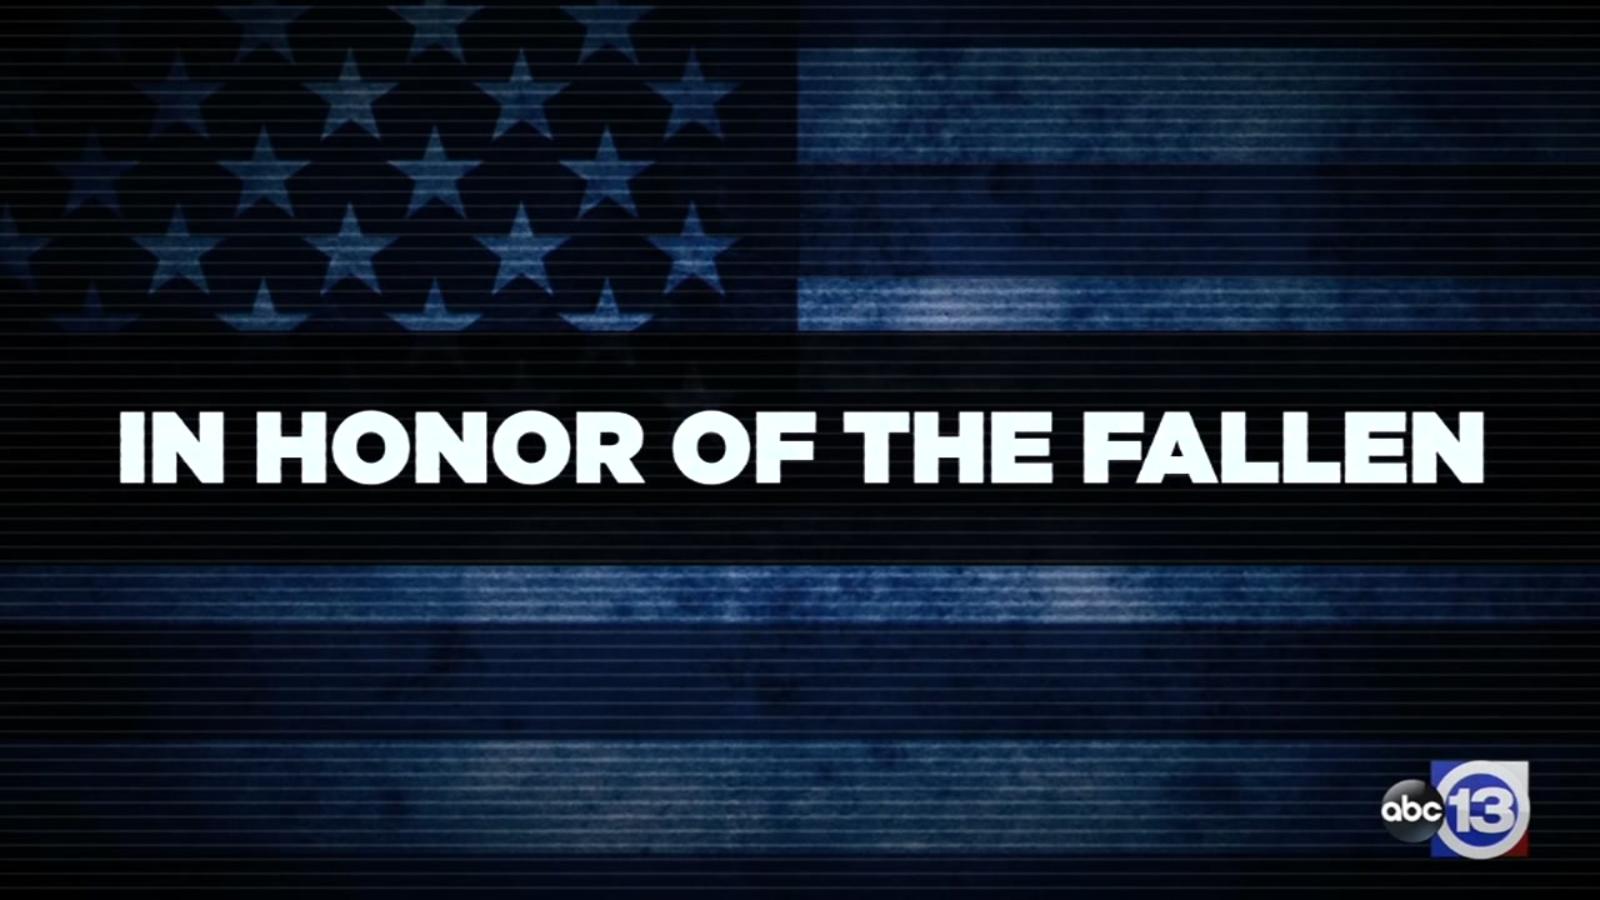 In honor of the fallen